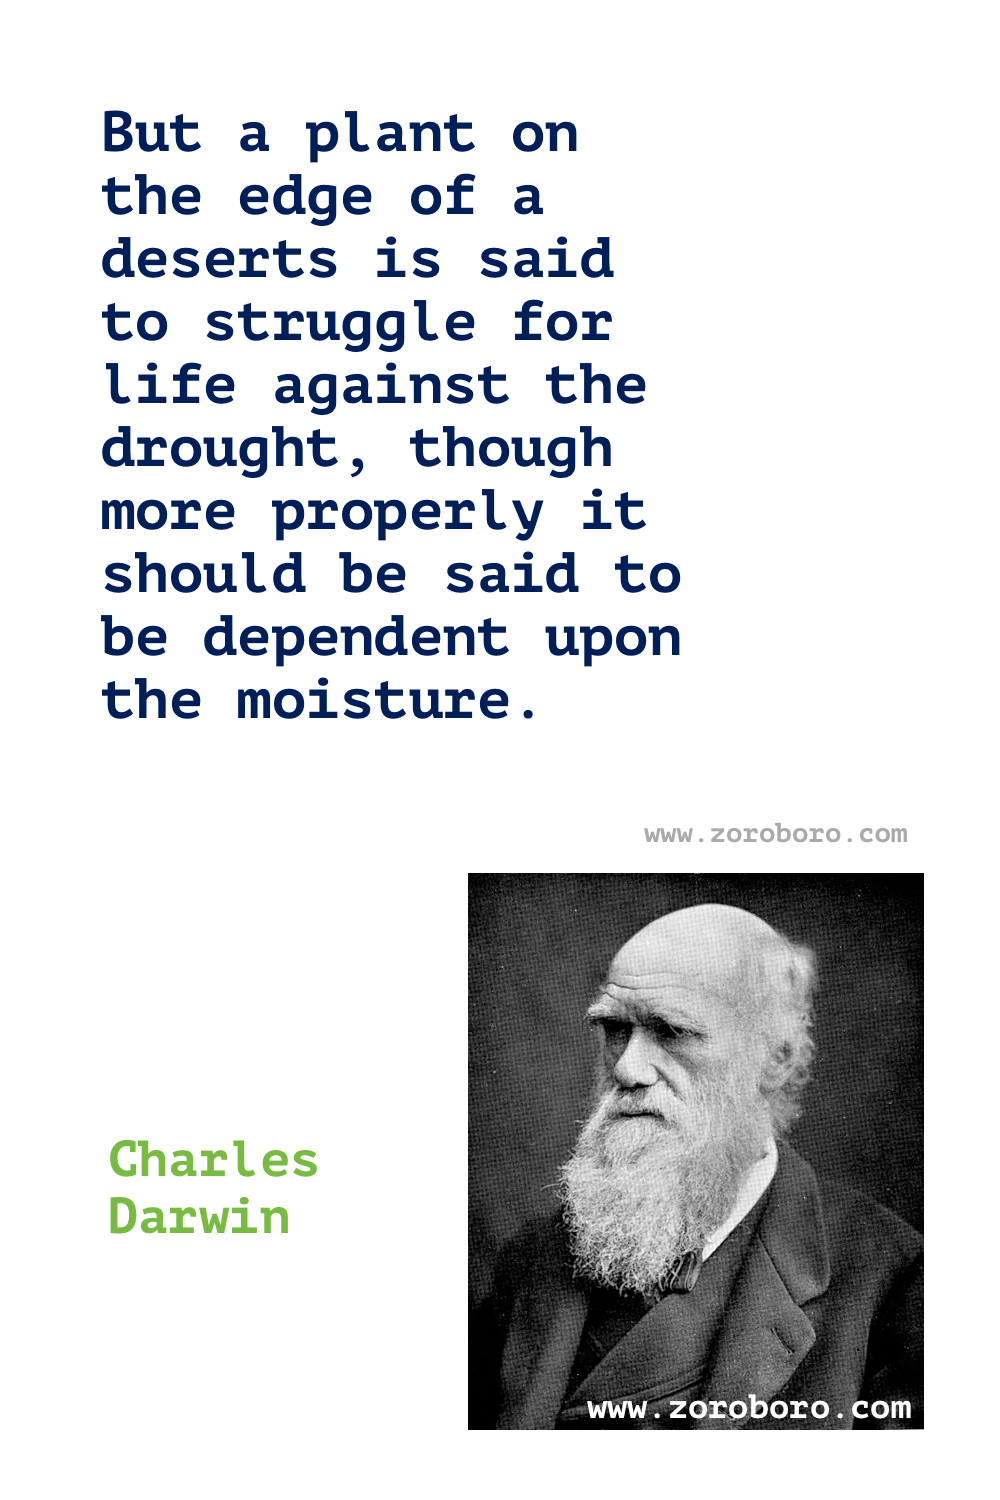 Charles Darwin Quotes. Charles Darwin theory of evolution. Charles Darwin Origin of species. Charles Darwin Books Quotes. Charles Darwin The Descent of Man Quotes, Charles Darwin Change Quotes, Adaptation Quotes & Evolution Quotes.